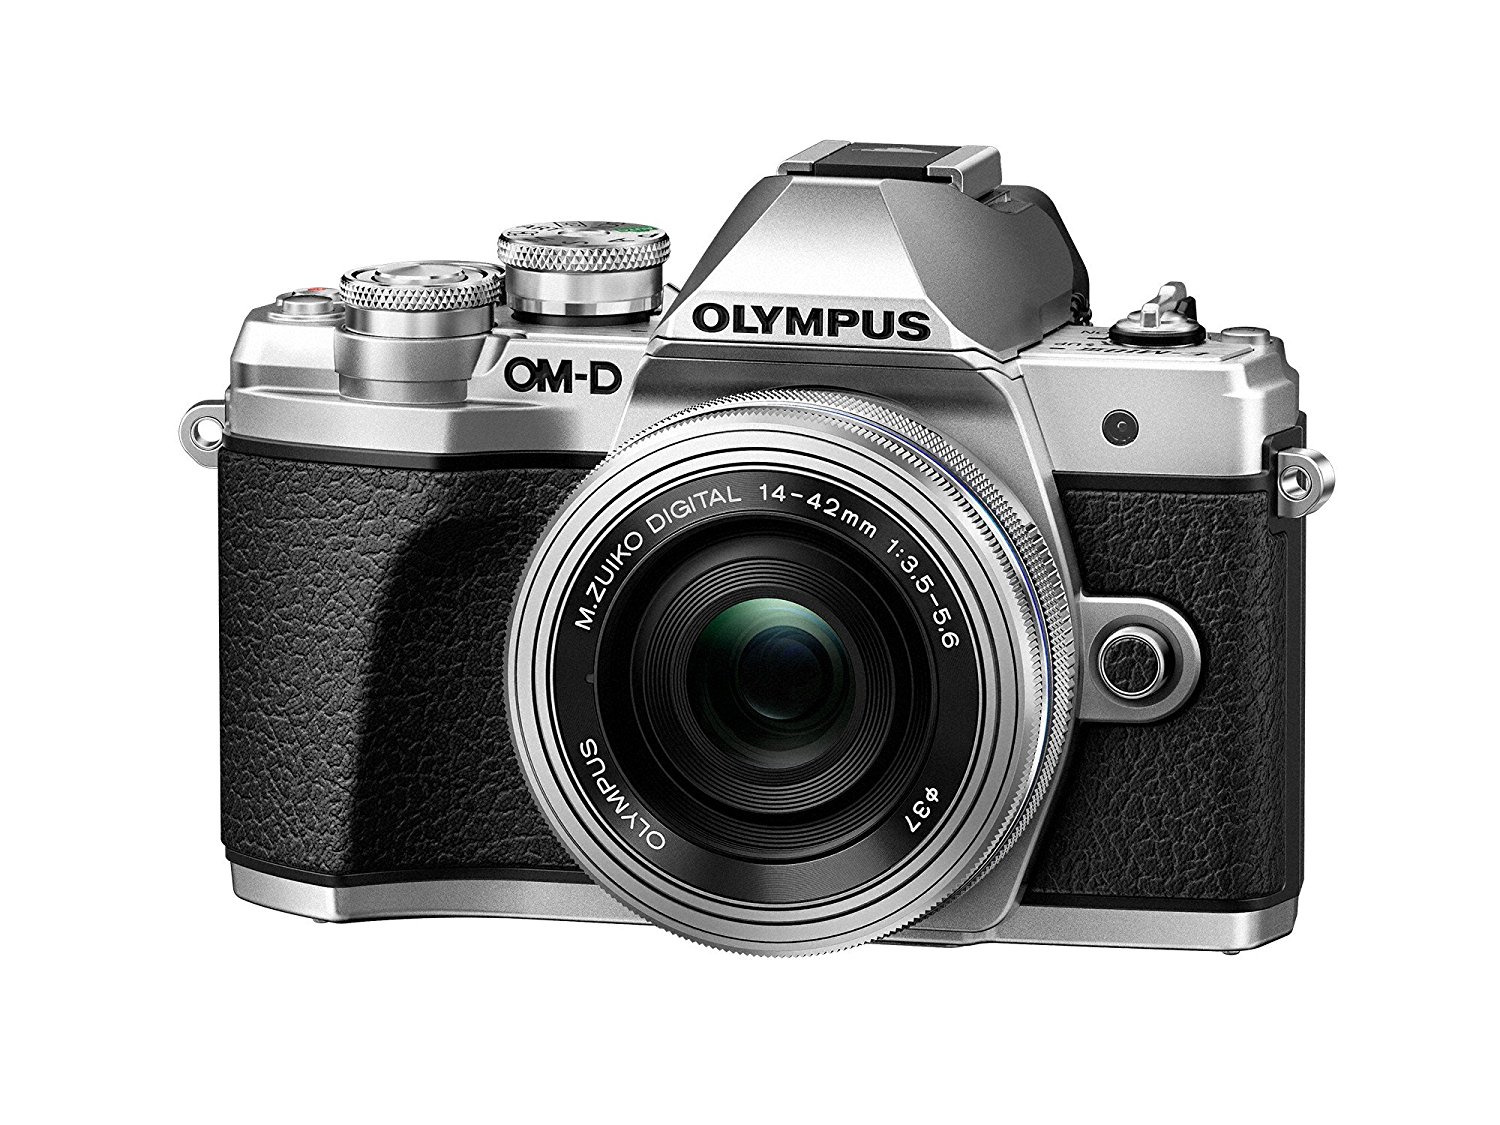 Olympus OM-D E-M10 Mark IIIカメラキット、14-42mm EZレンズ（シルバー）、カメラバッグ＆メモリーカード、Wi-Fi対応、4Kビデオ